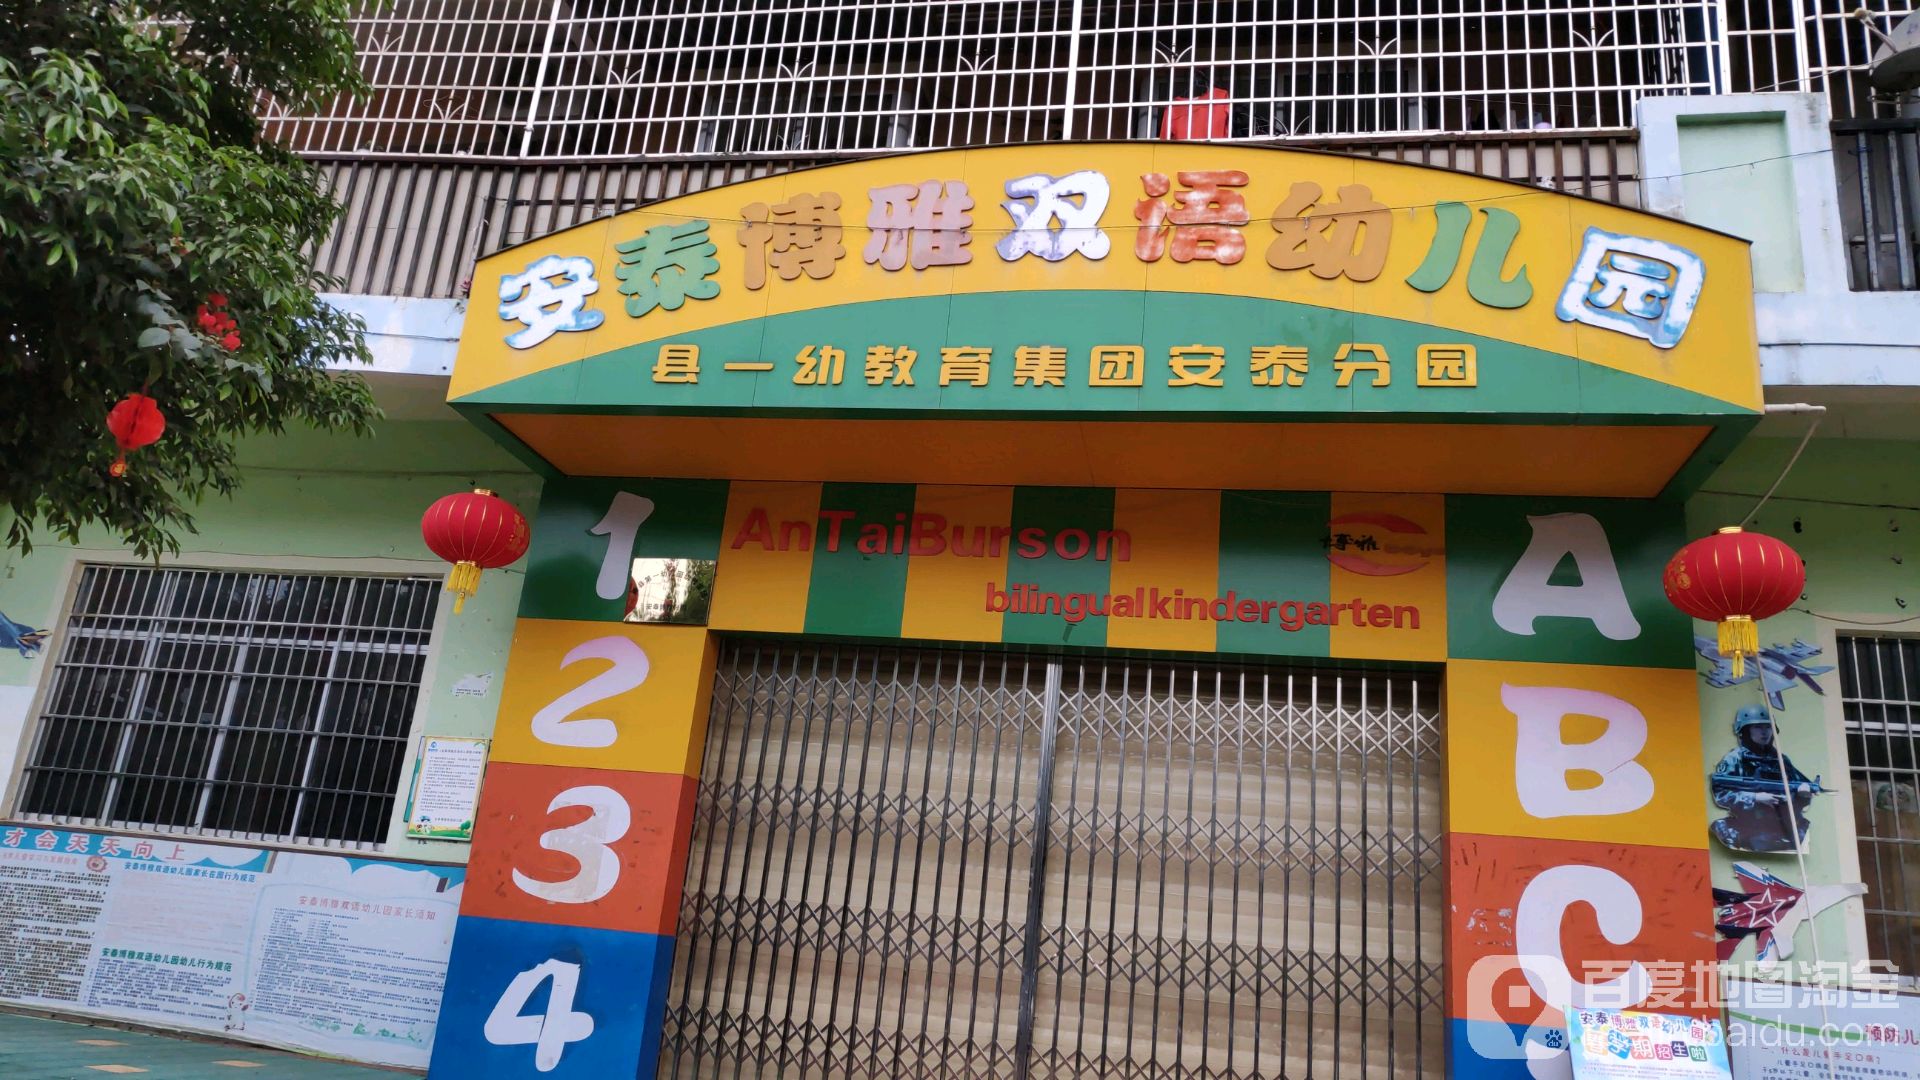 藤县安泰博雅双语幼儿园的图片